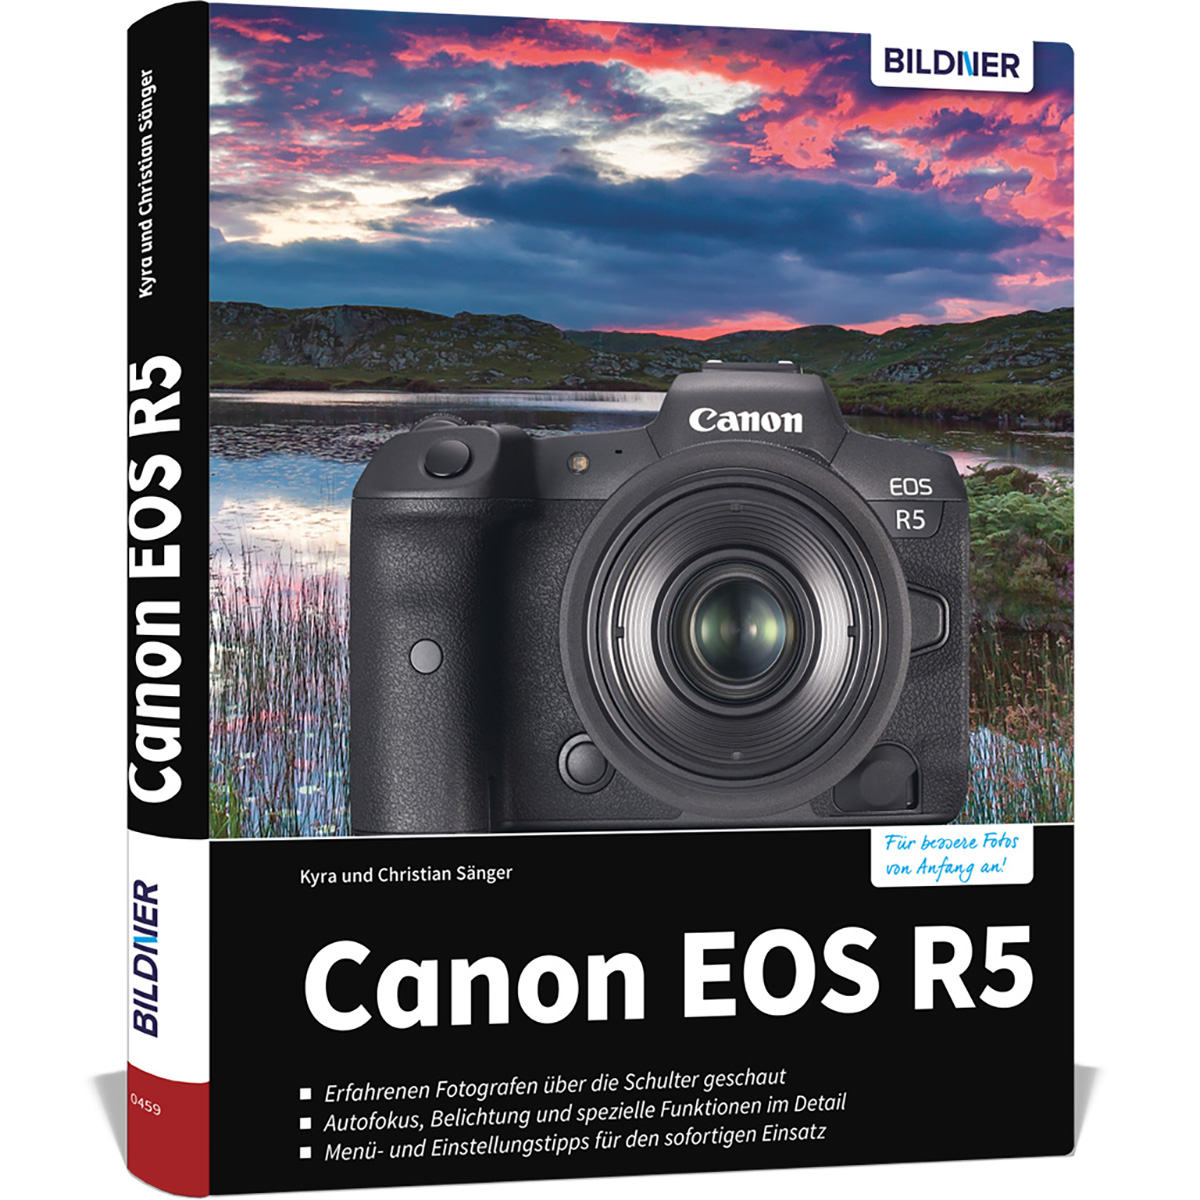 Canon EOS R5 - Ihrer umfangreiche Kamera Praxisbuch Das zu